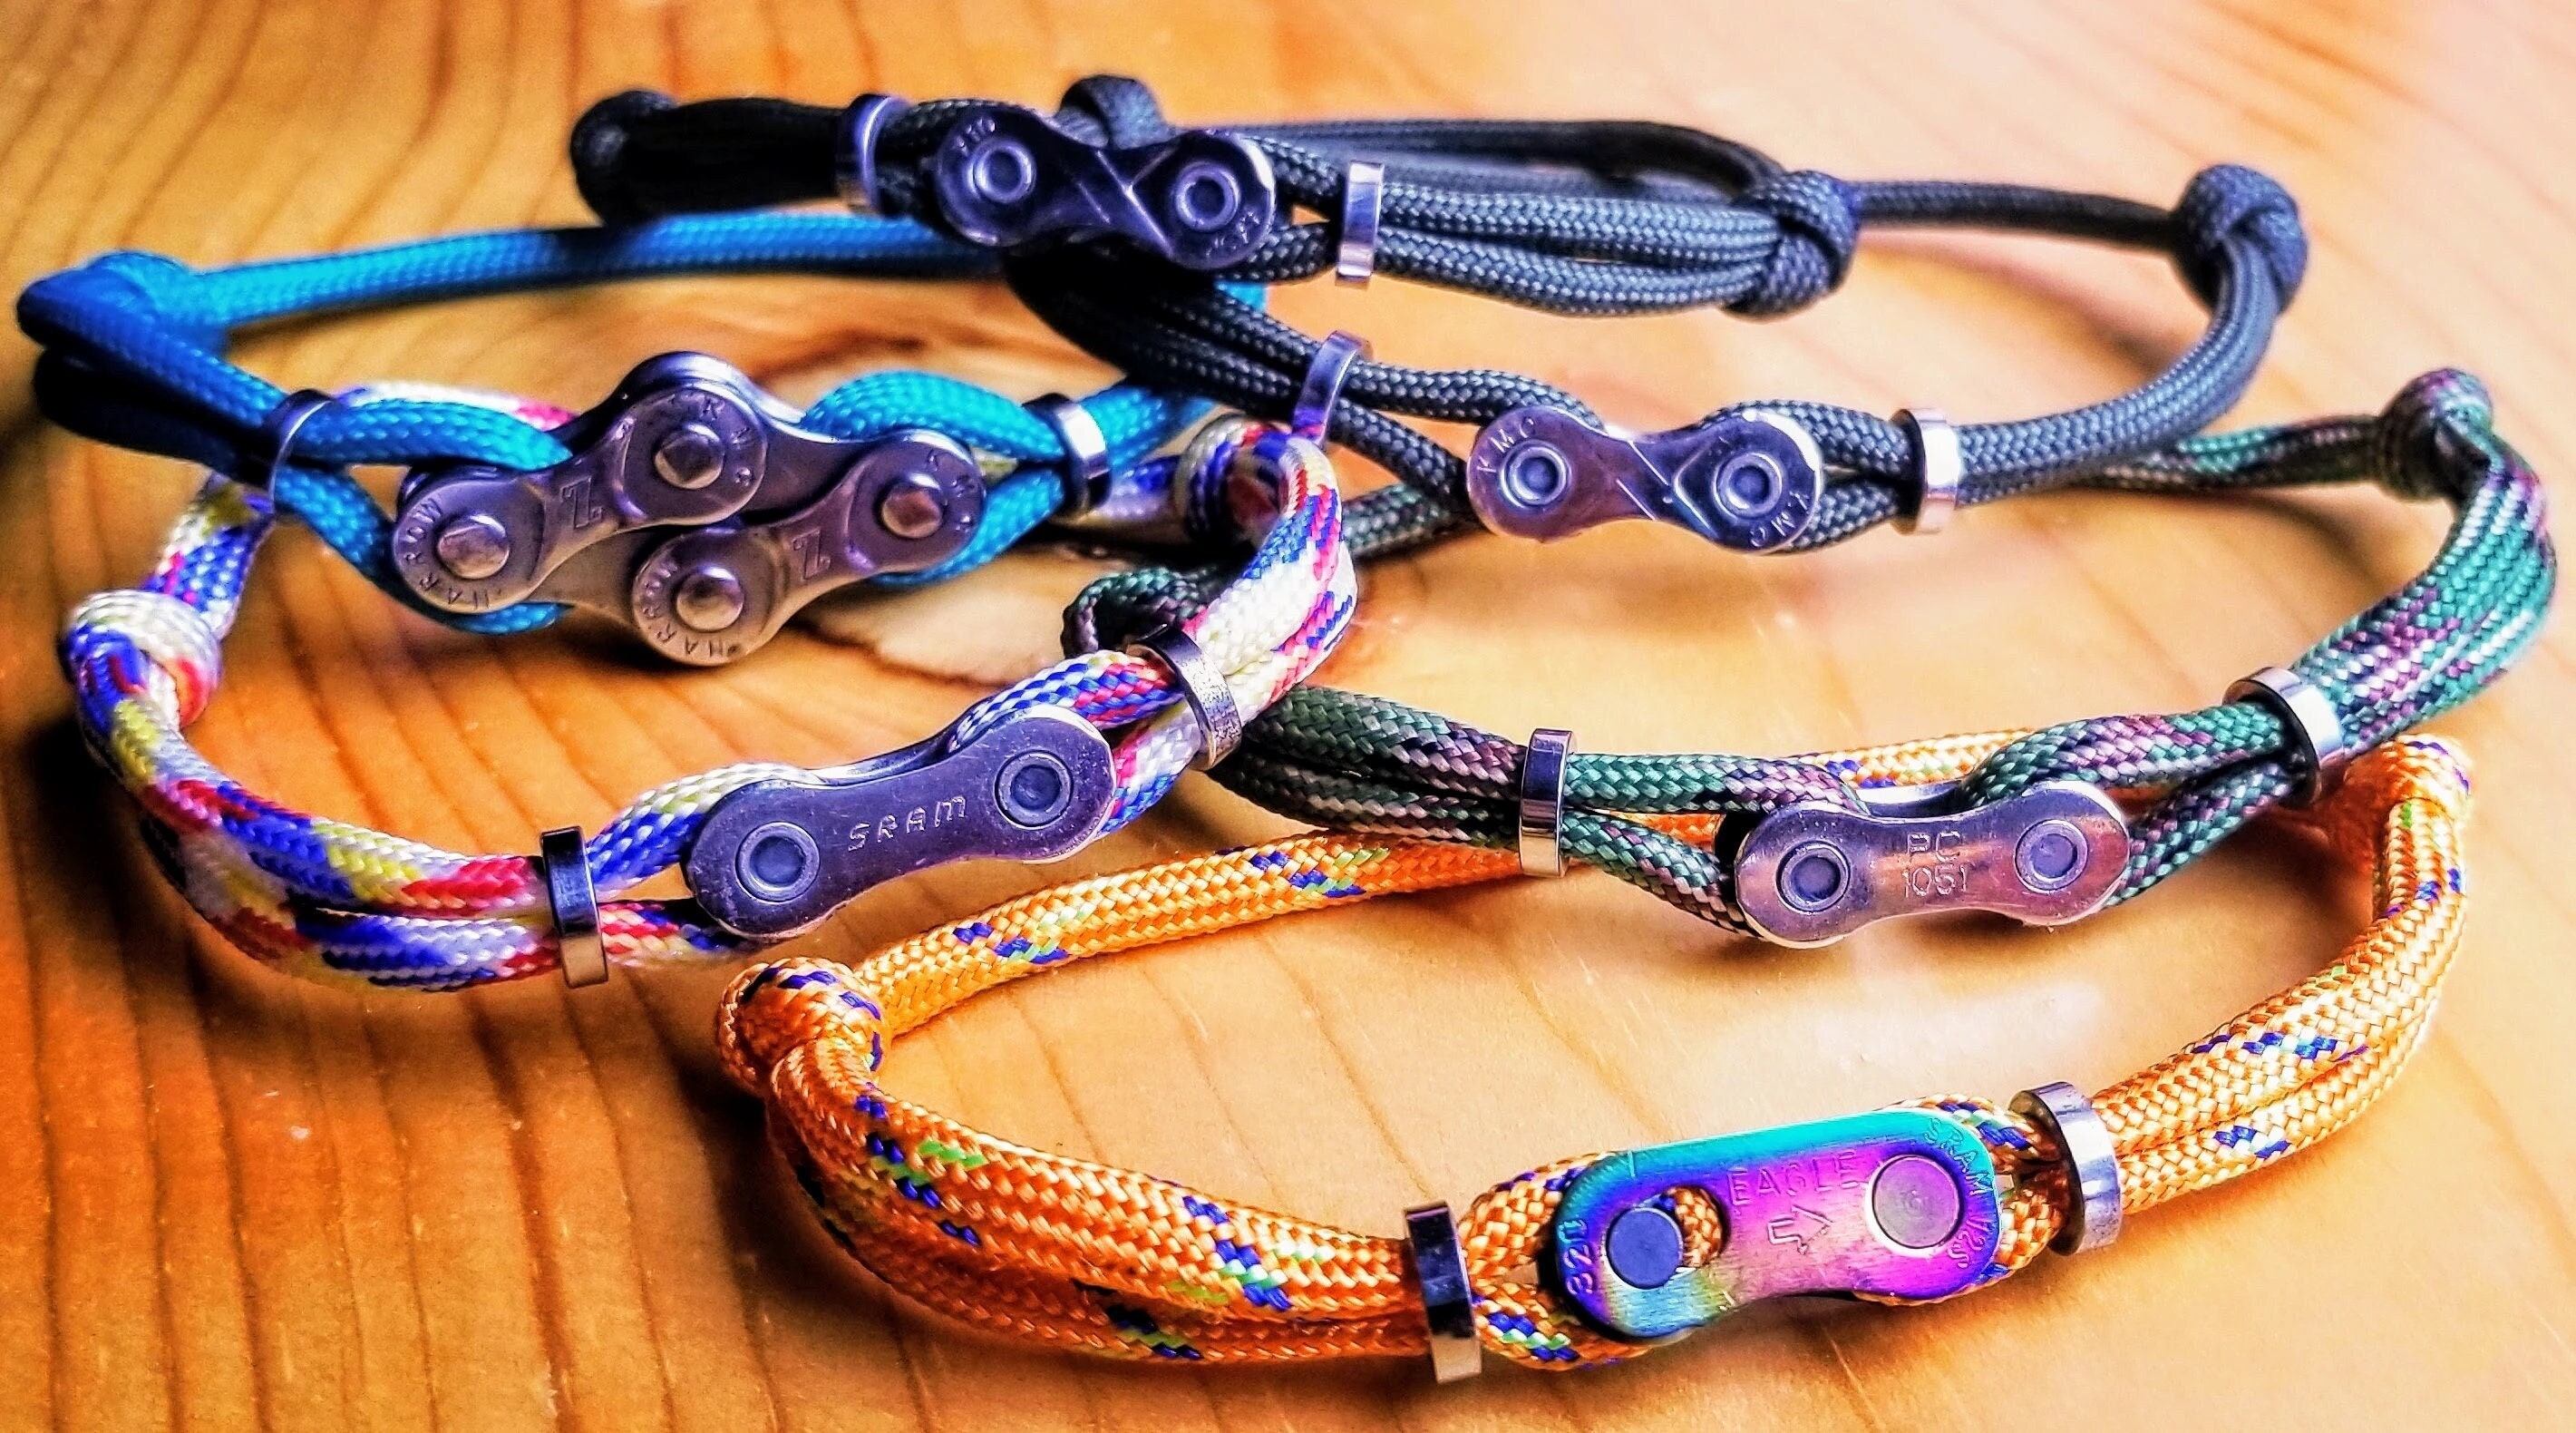 Rainbow Bike Chain Bracelet